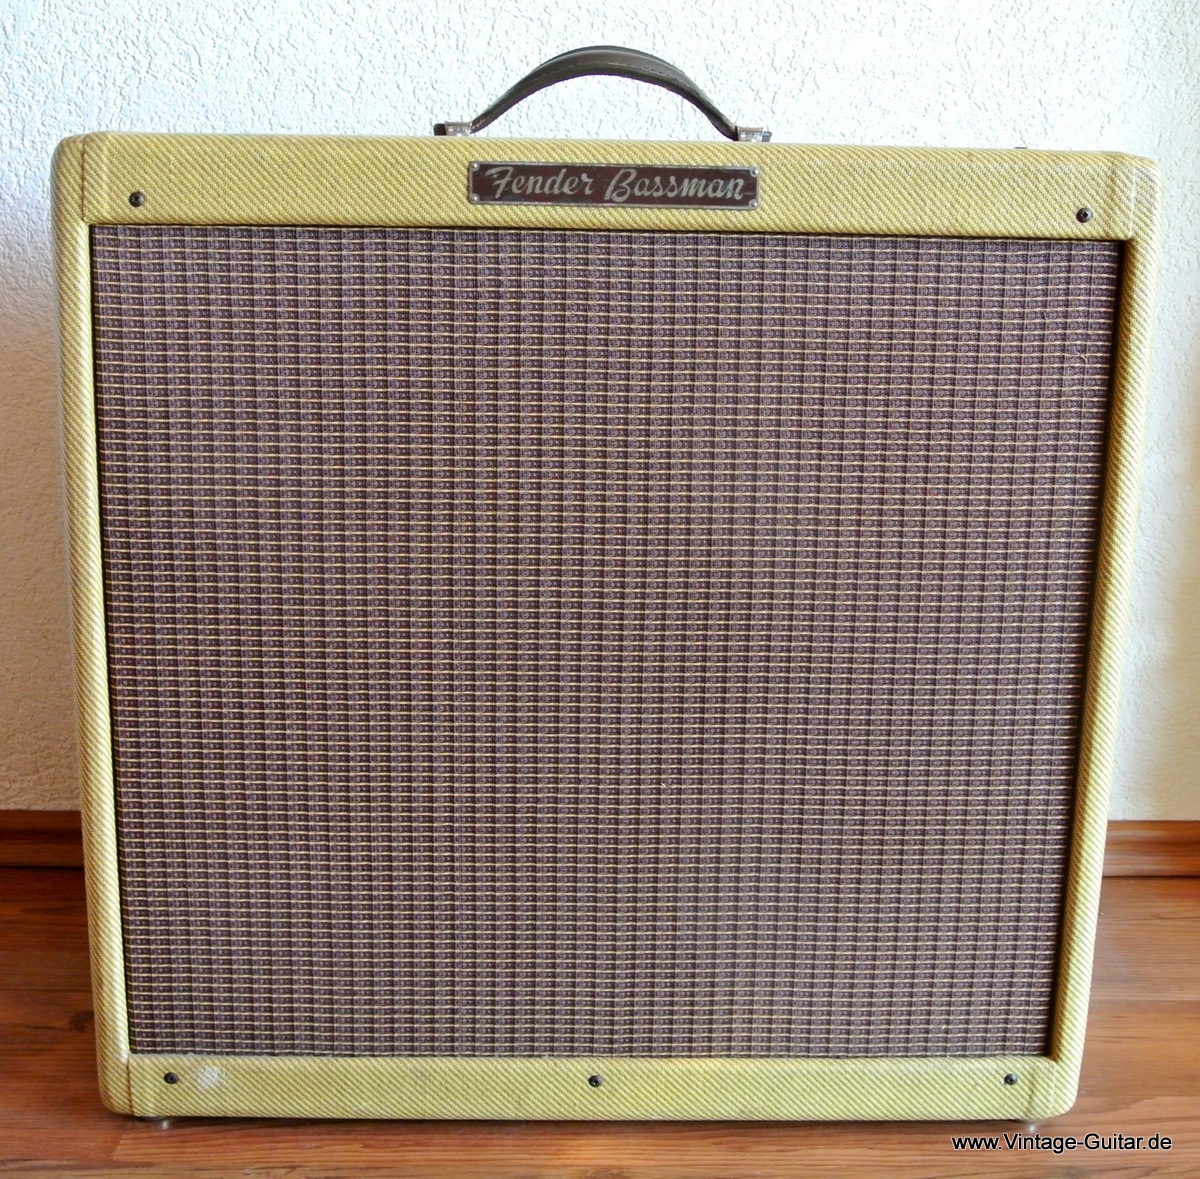 Fender-Bassman-1957-tweed-recovered-001.jpg